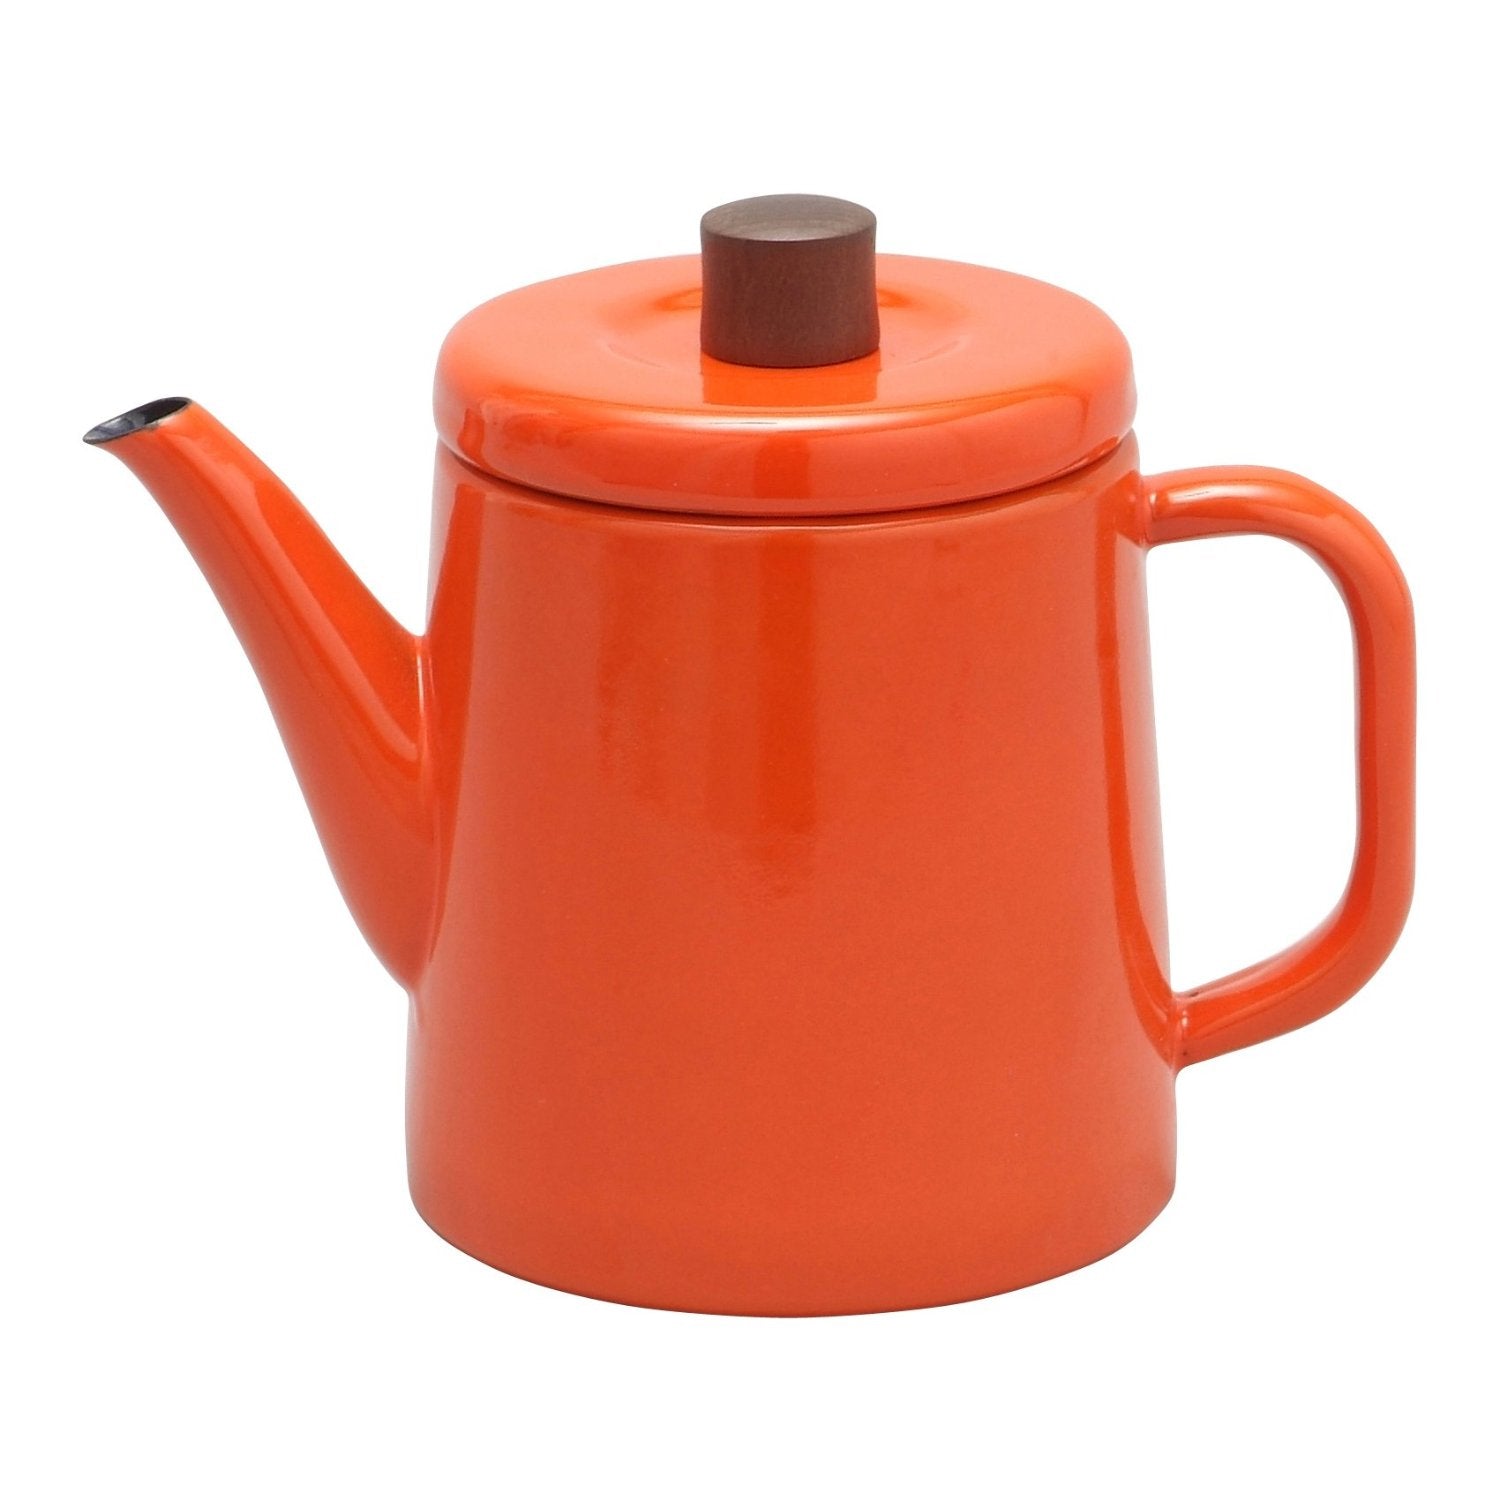 Enamel Teapot / Kettle (Orange)